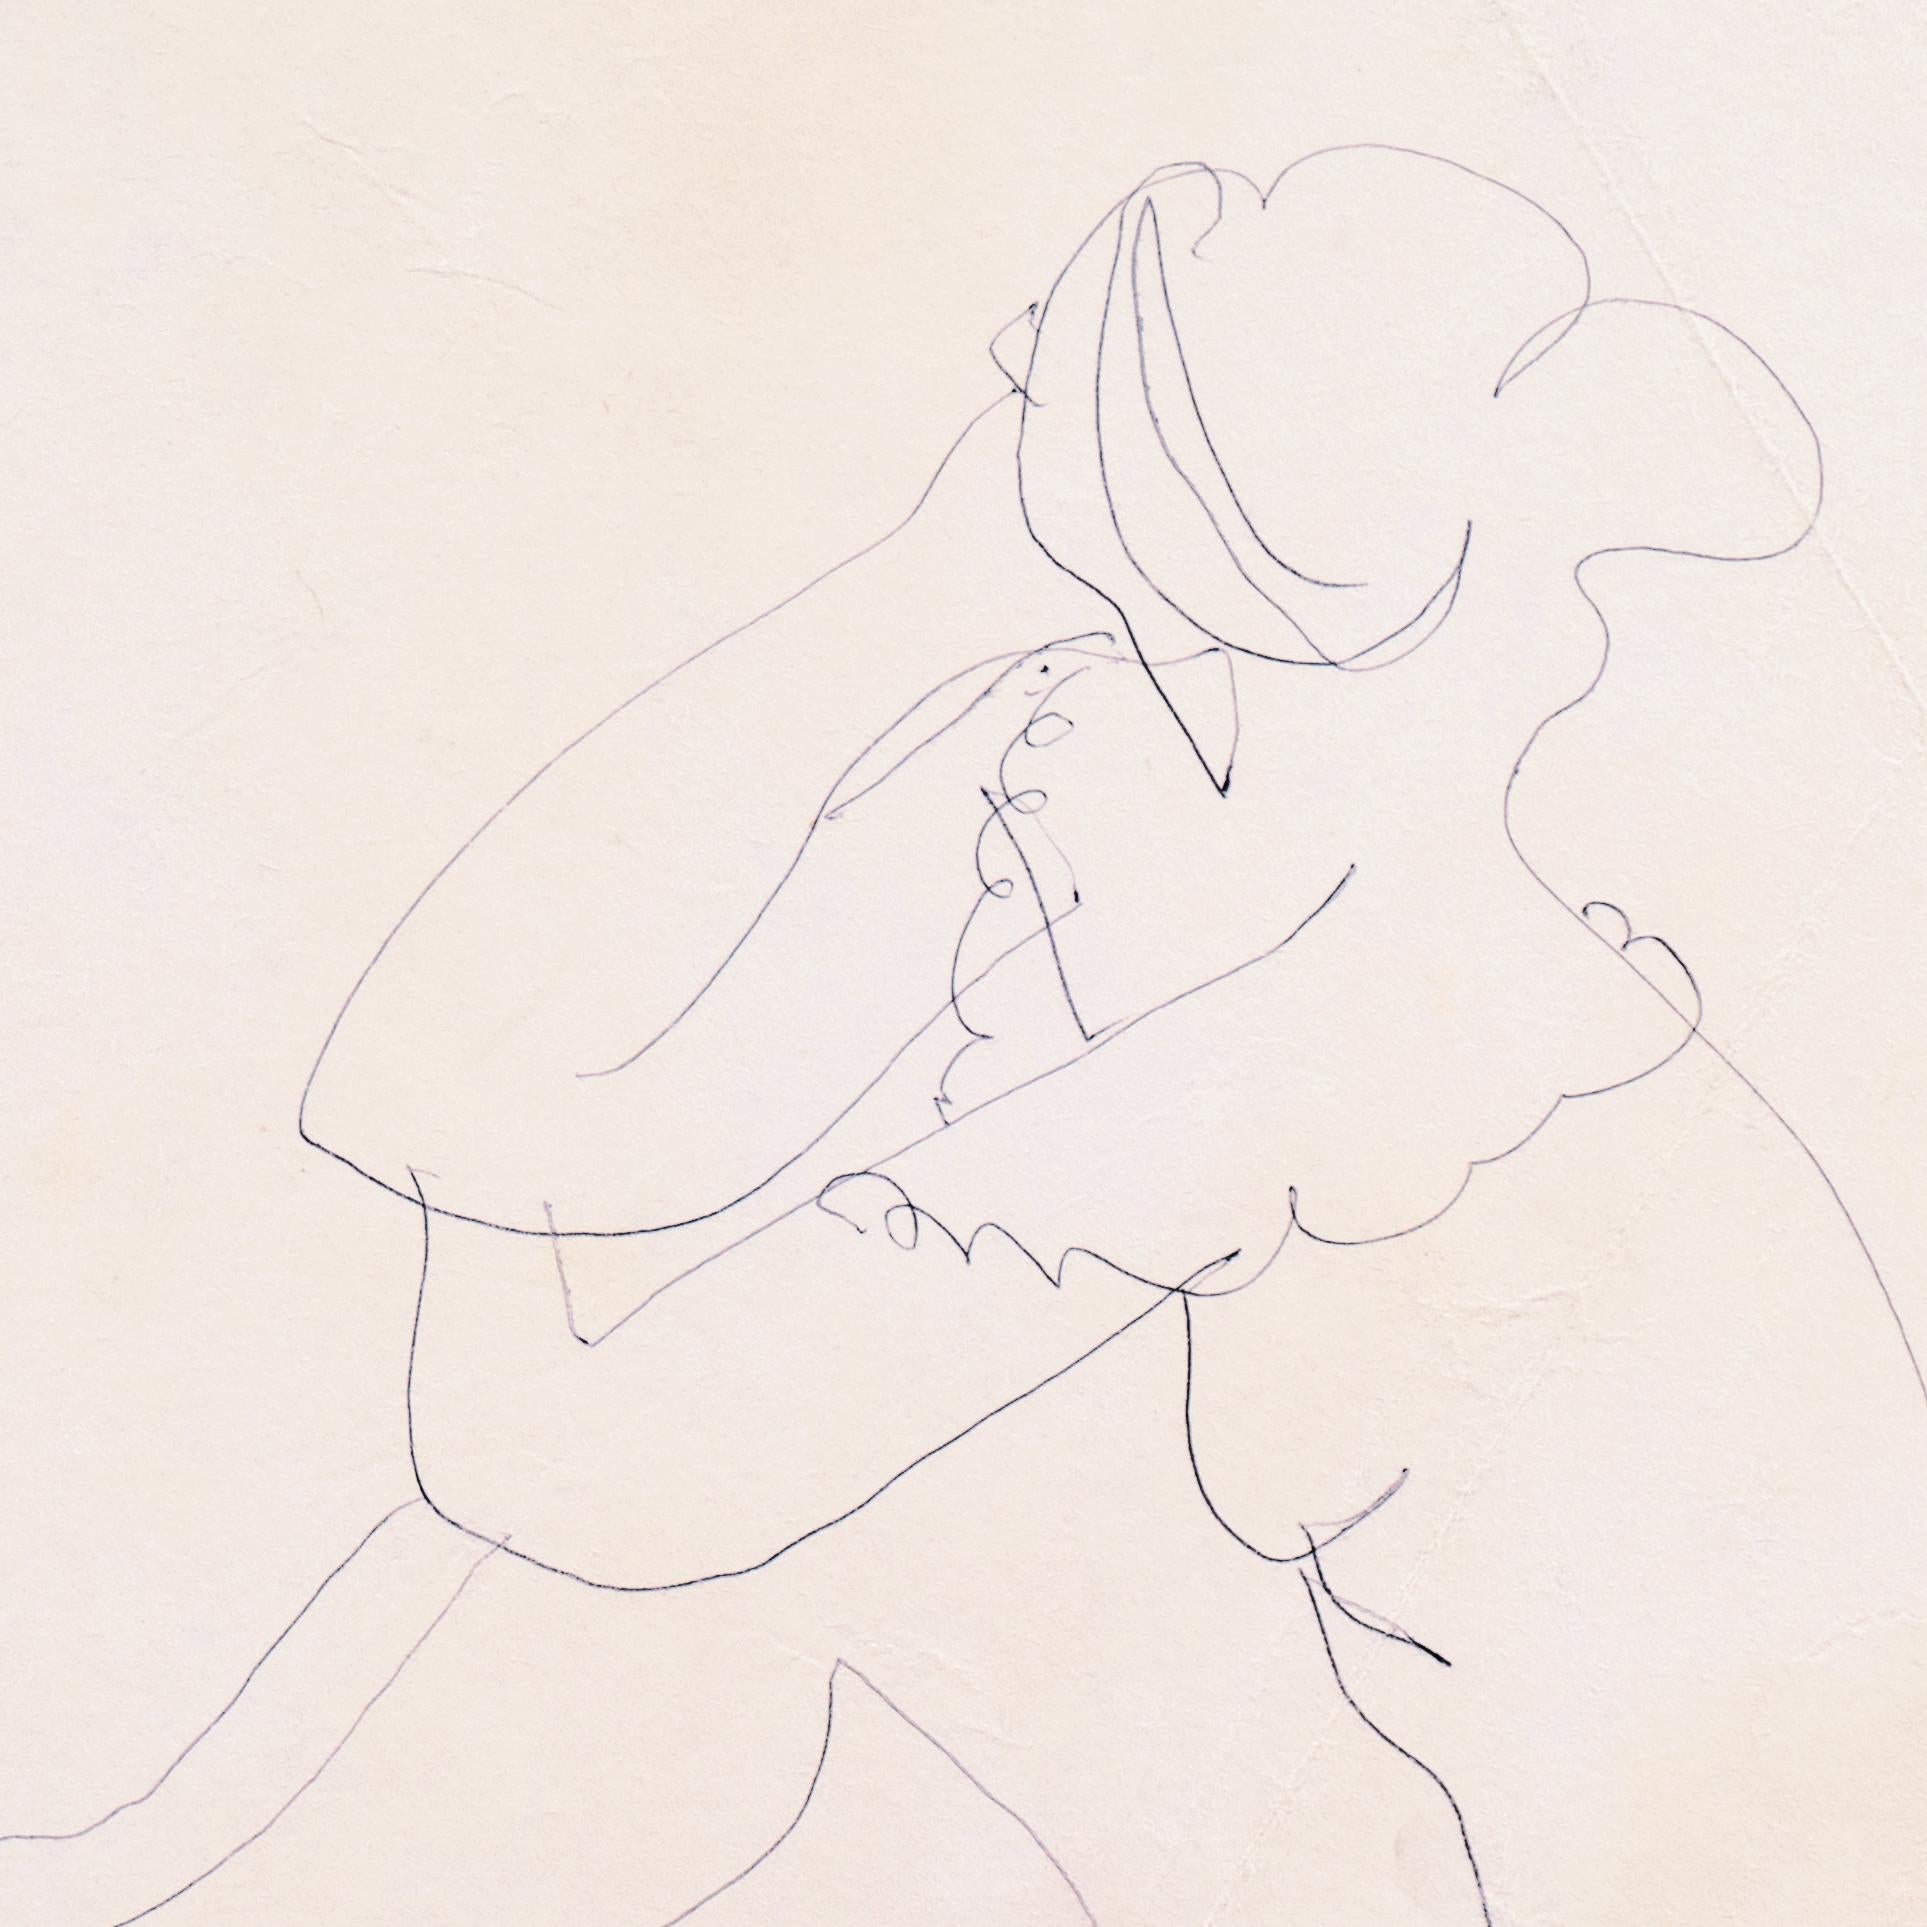 Verso gestempelt mit dem Nachlassstempel von Victor Di Gesu (Amerikaner, 1914-1988), geschaffen um 1950.

Graphitzeichnung einer nackten, sitzenden jungen Frau, die ihr Kinn in die Hand gestützt hat.

Victor di Gesu, Gewinner des Prix Othon Friesz,